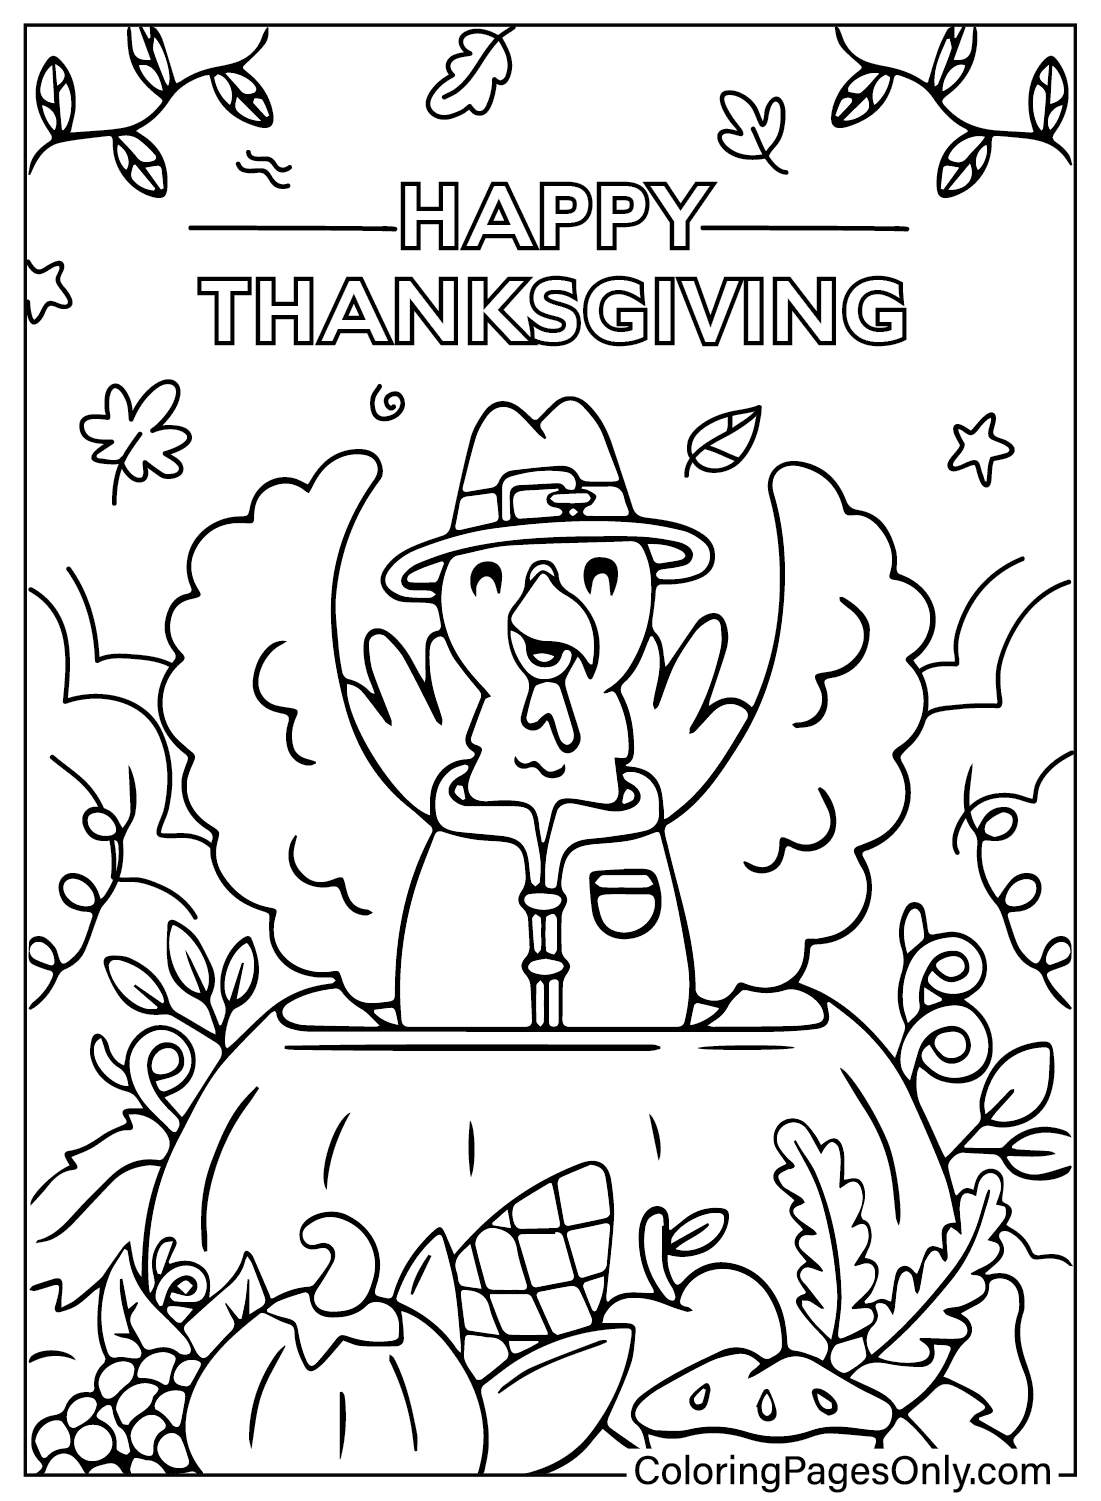 Página para colorear de dibujos animados de Acción de Gracias de Dibujos animados de Acción de Gracias